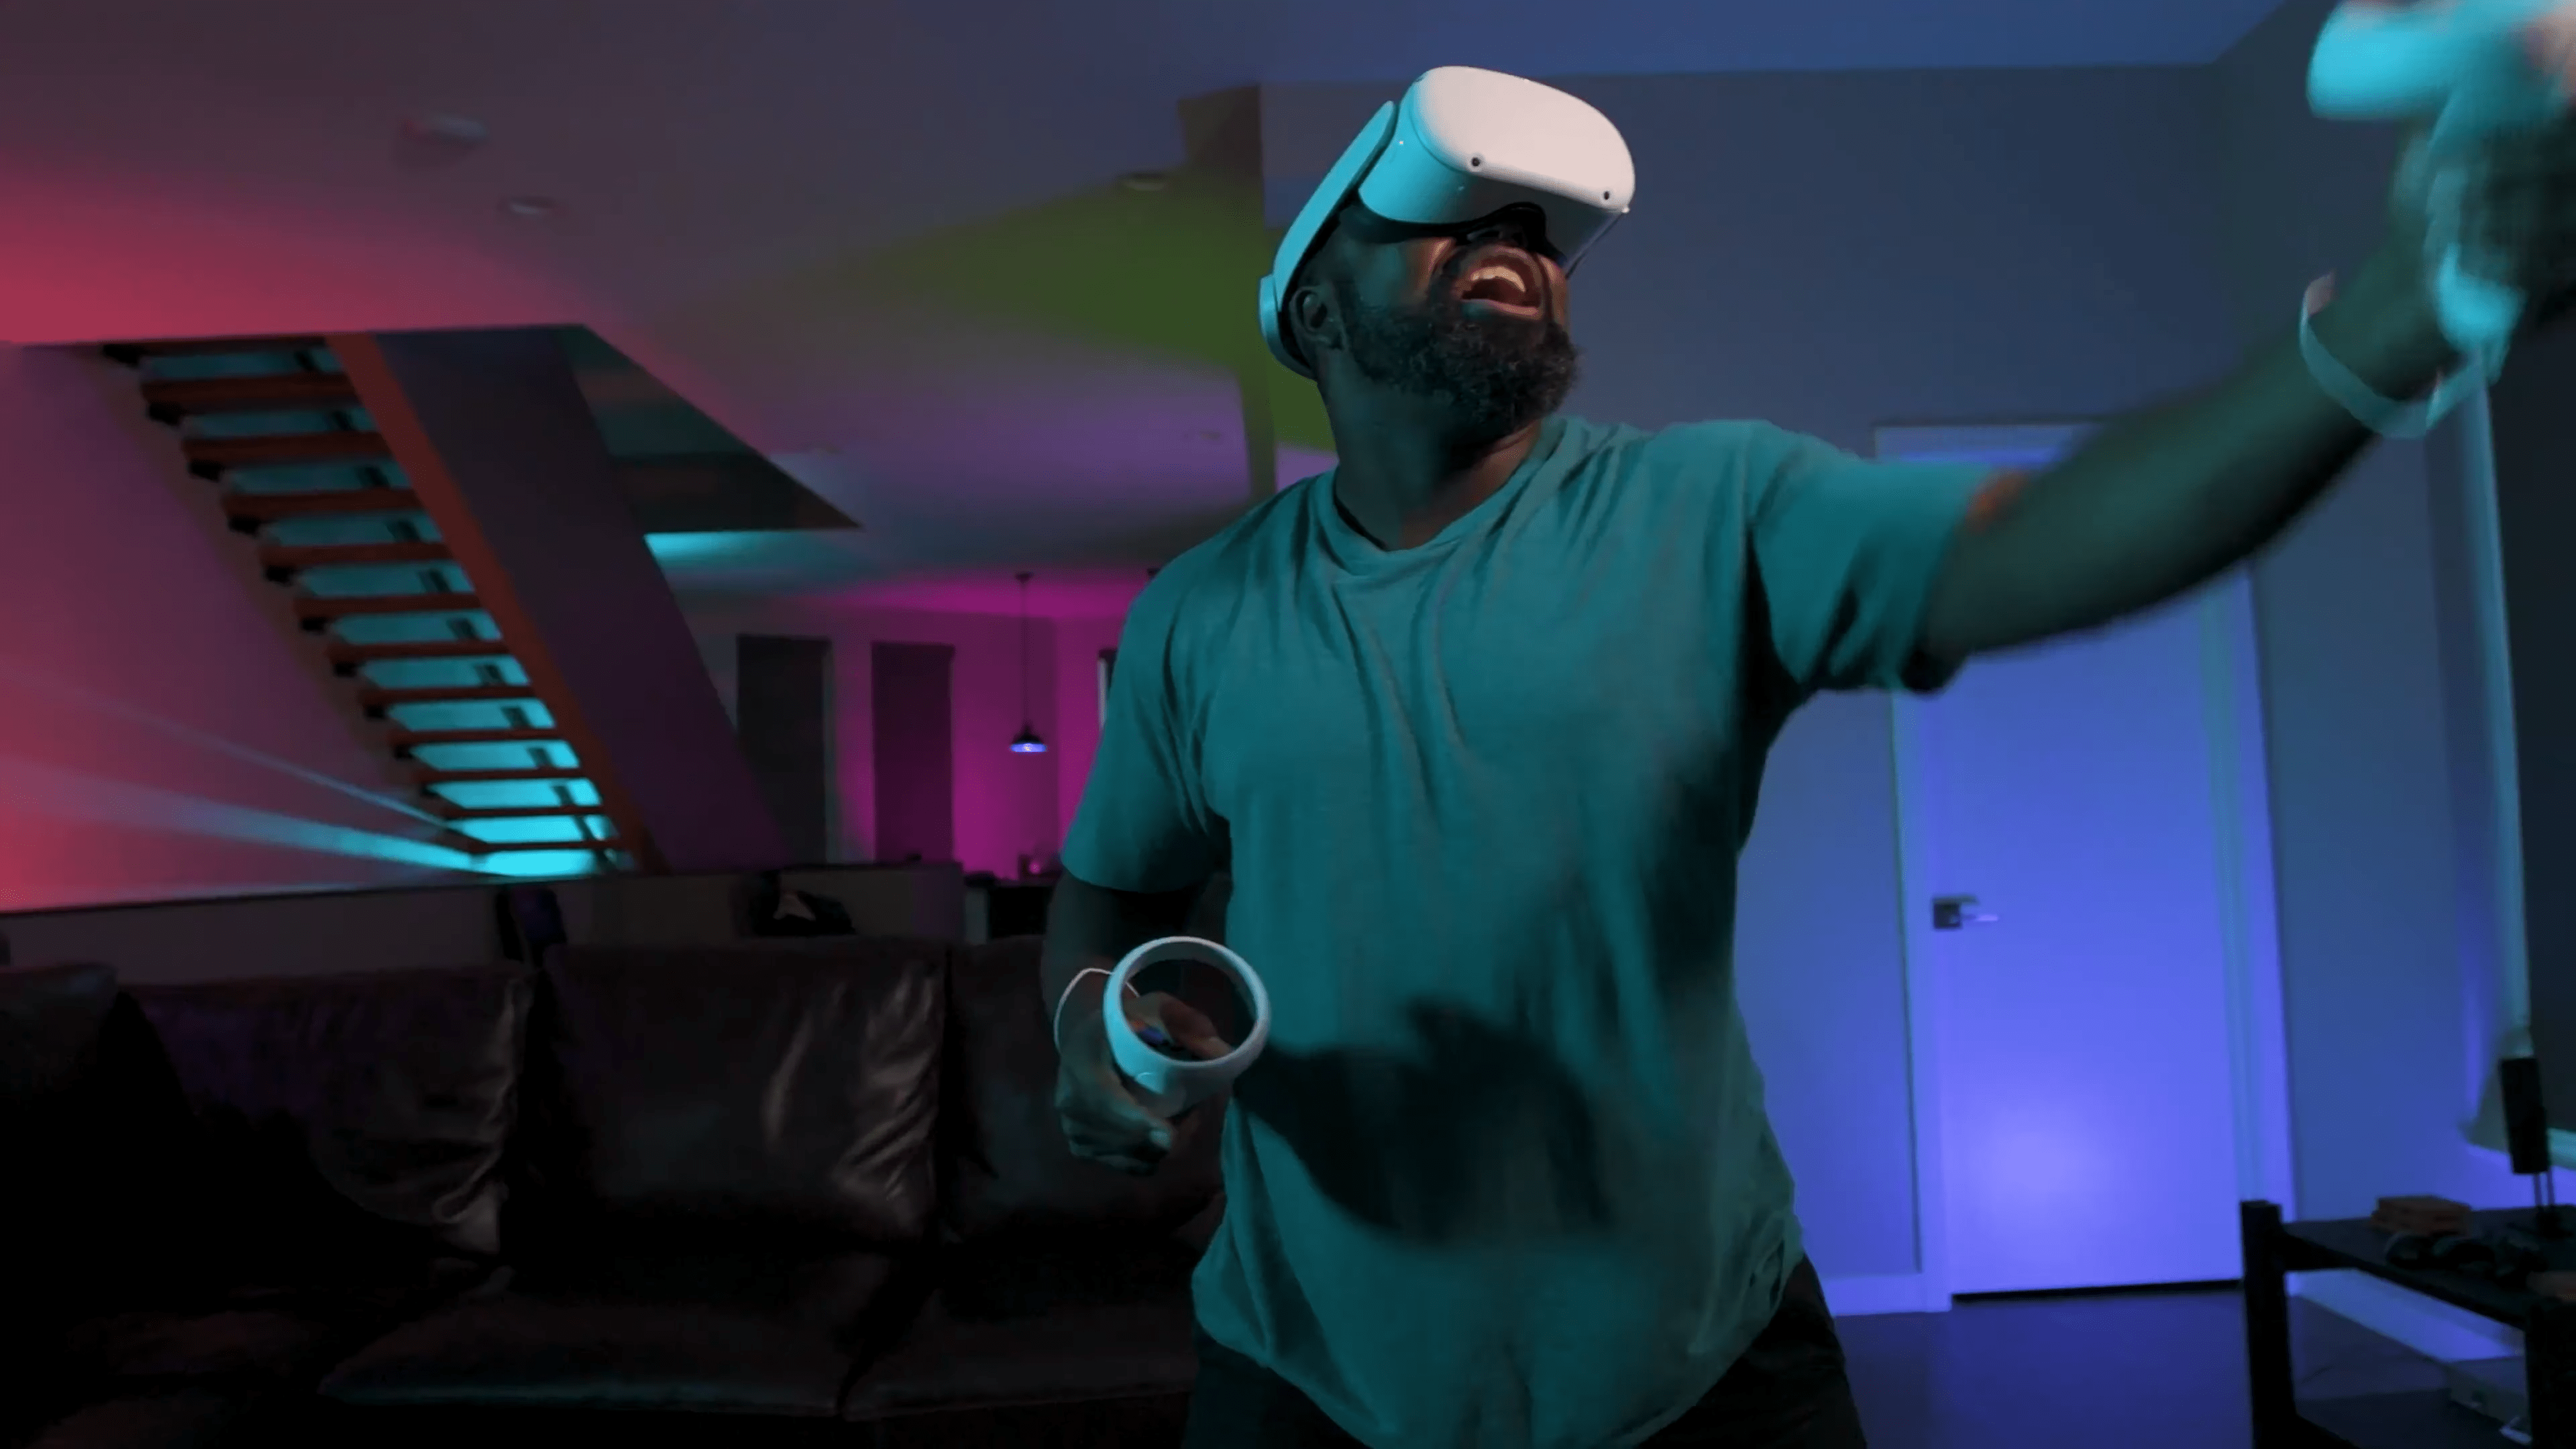 Straylight im Test: Schwungvolle VR-Action ohne Gnade